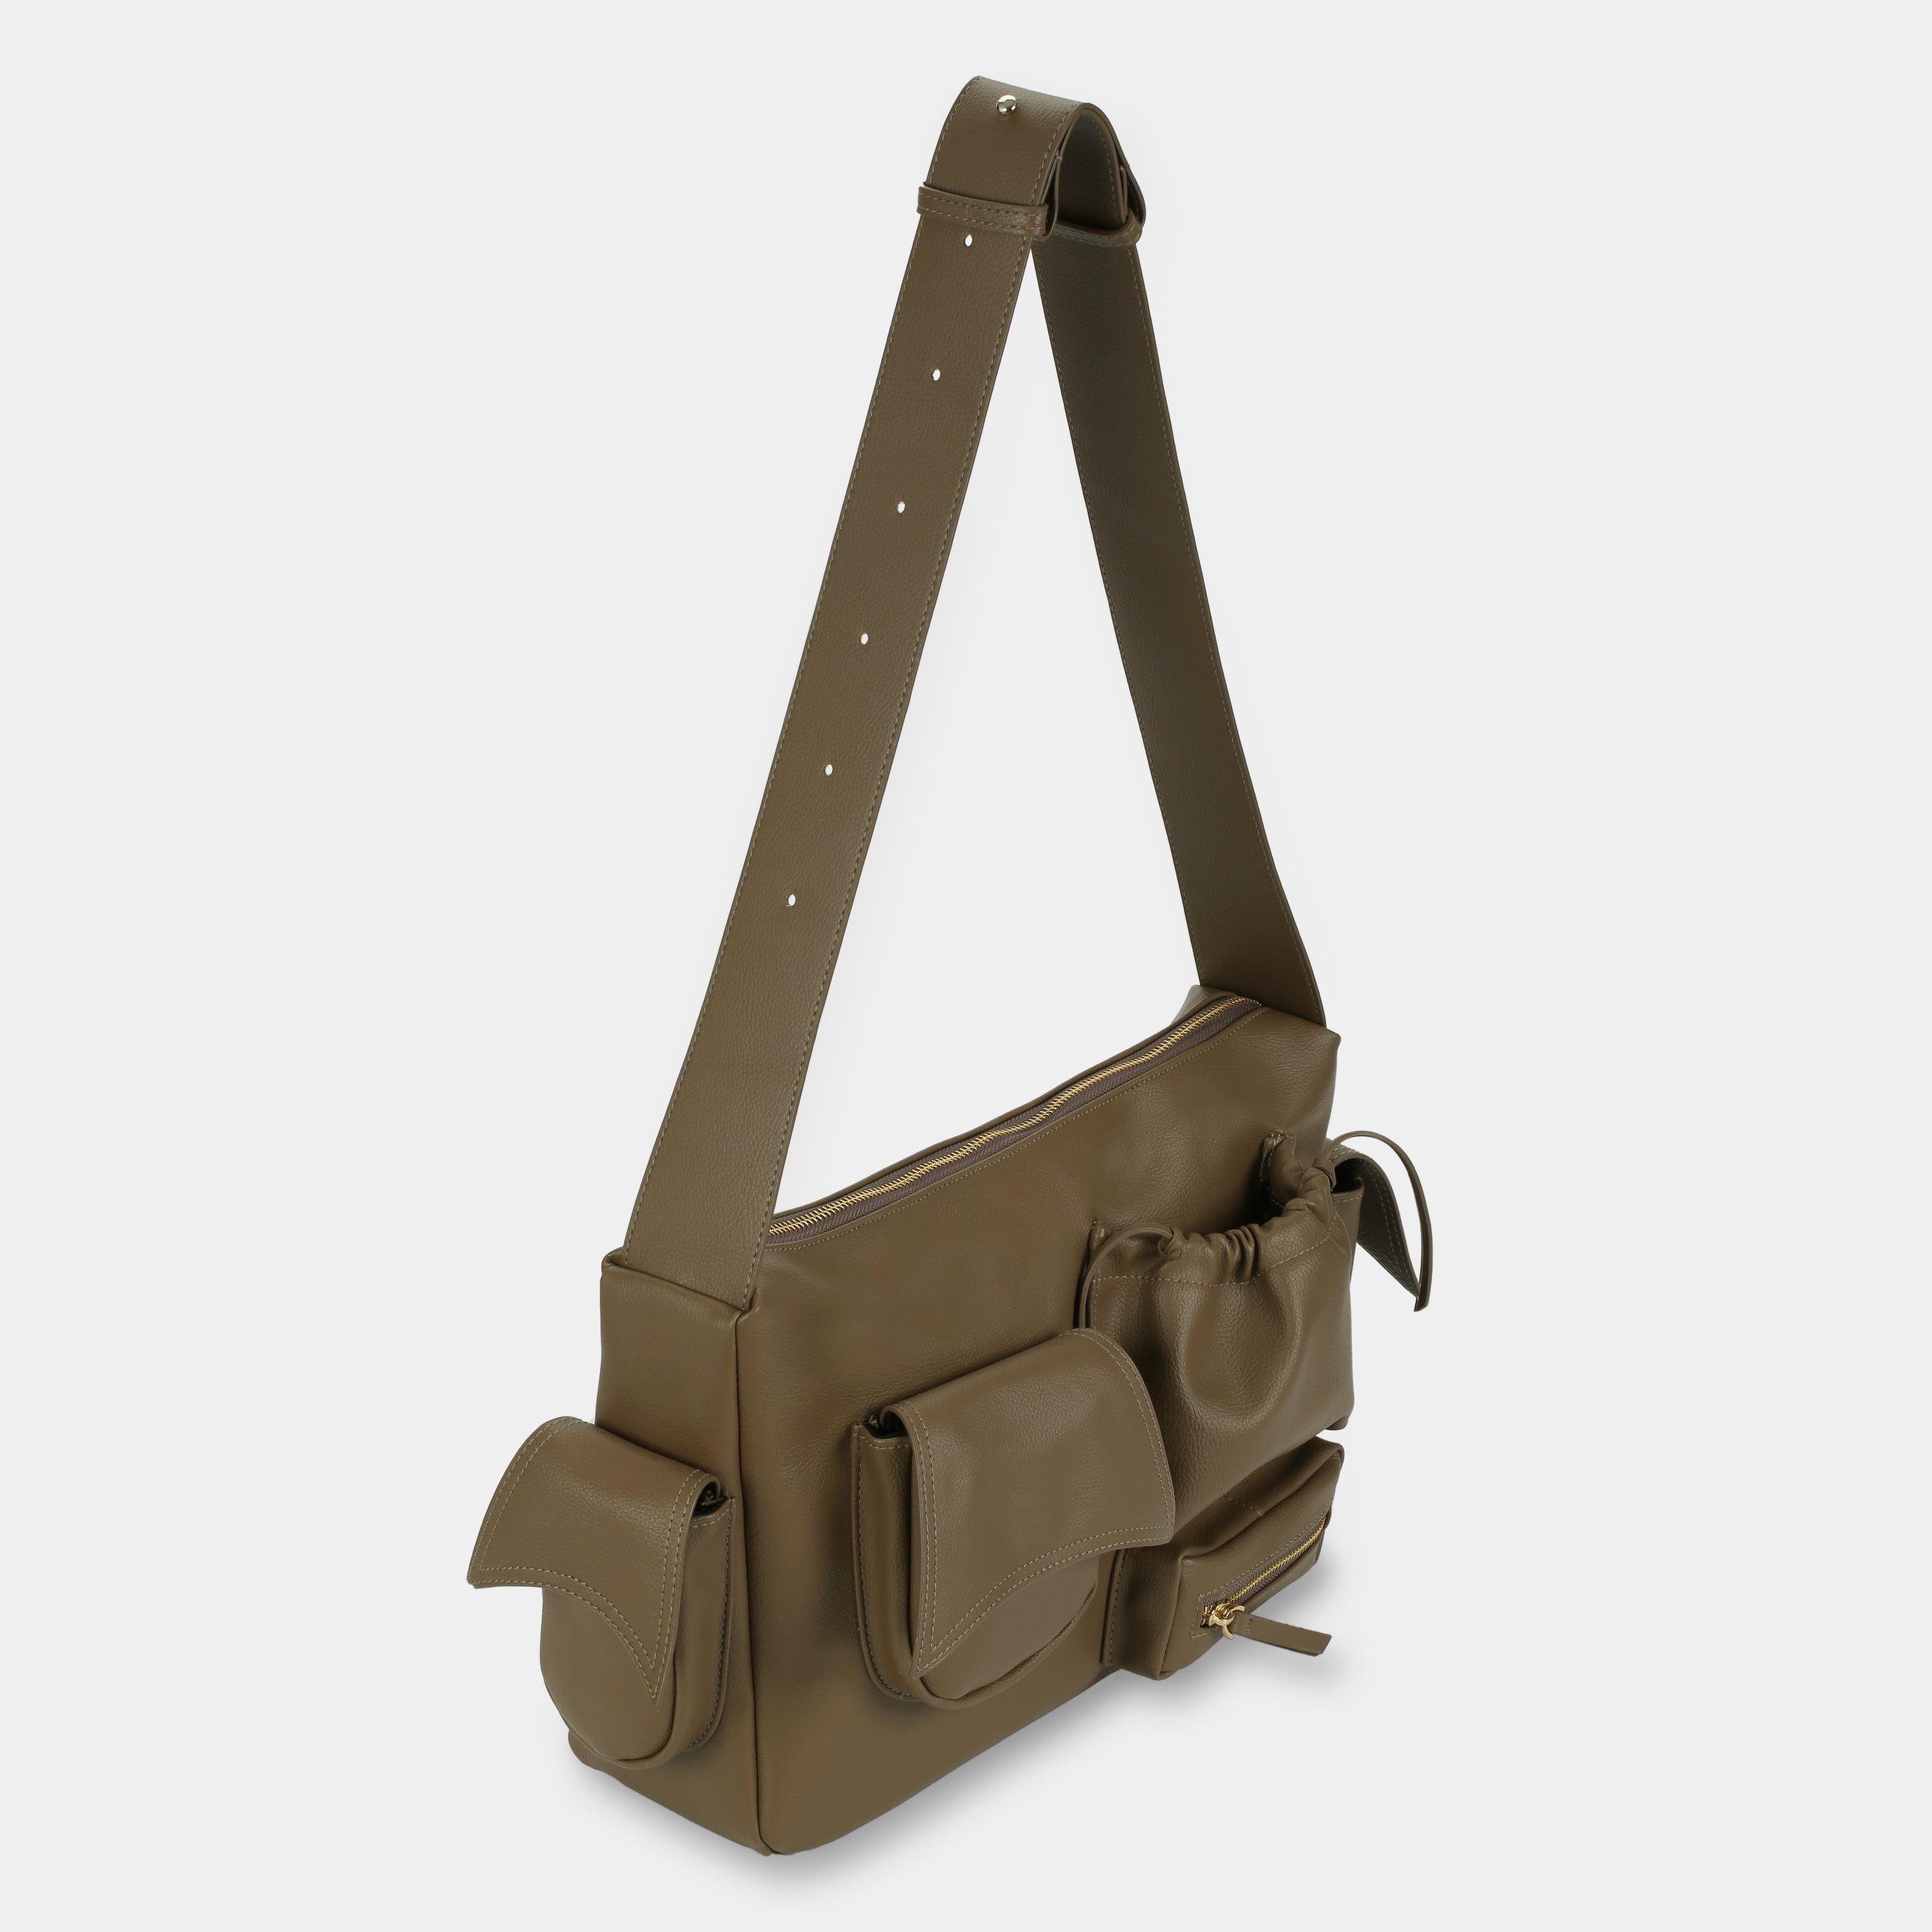 Túi xách C5-Pocket size Laptop (L) màu beige tối